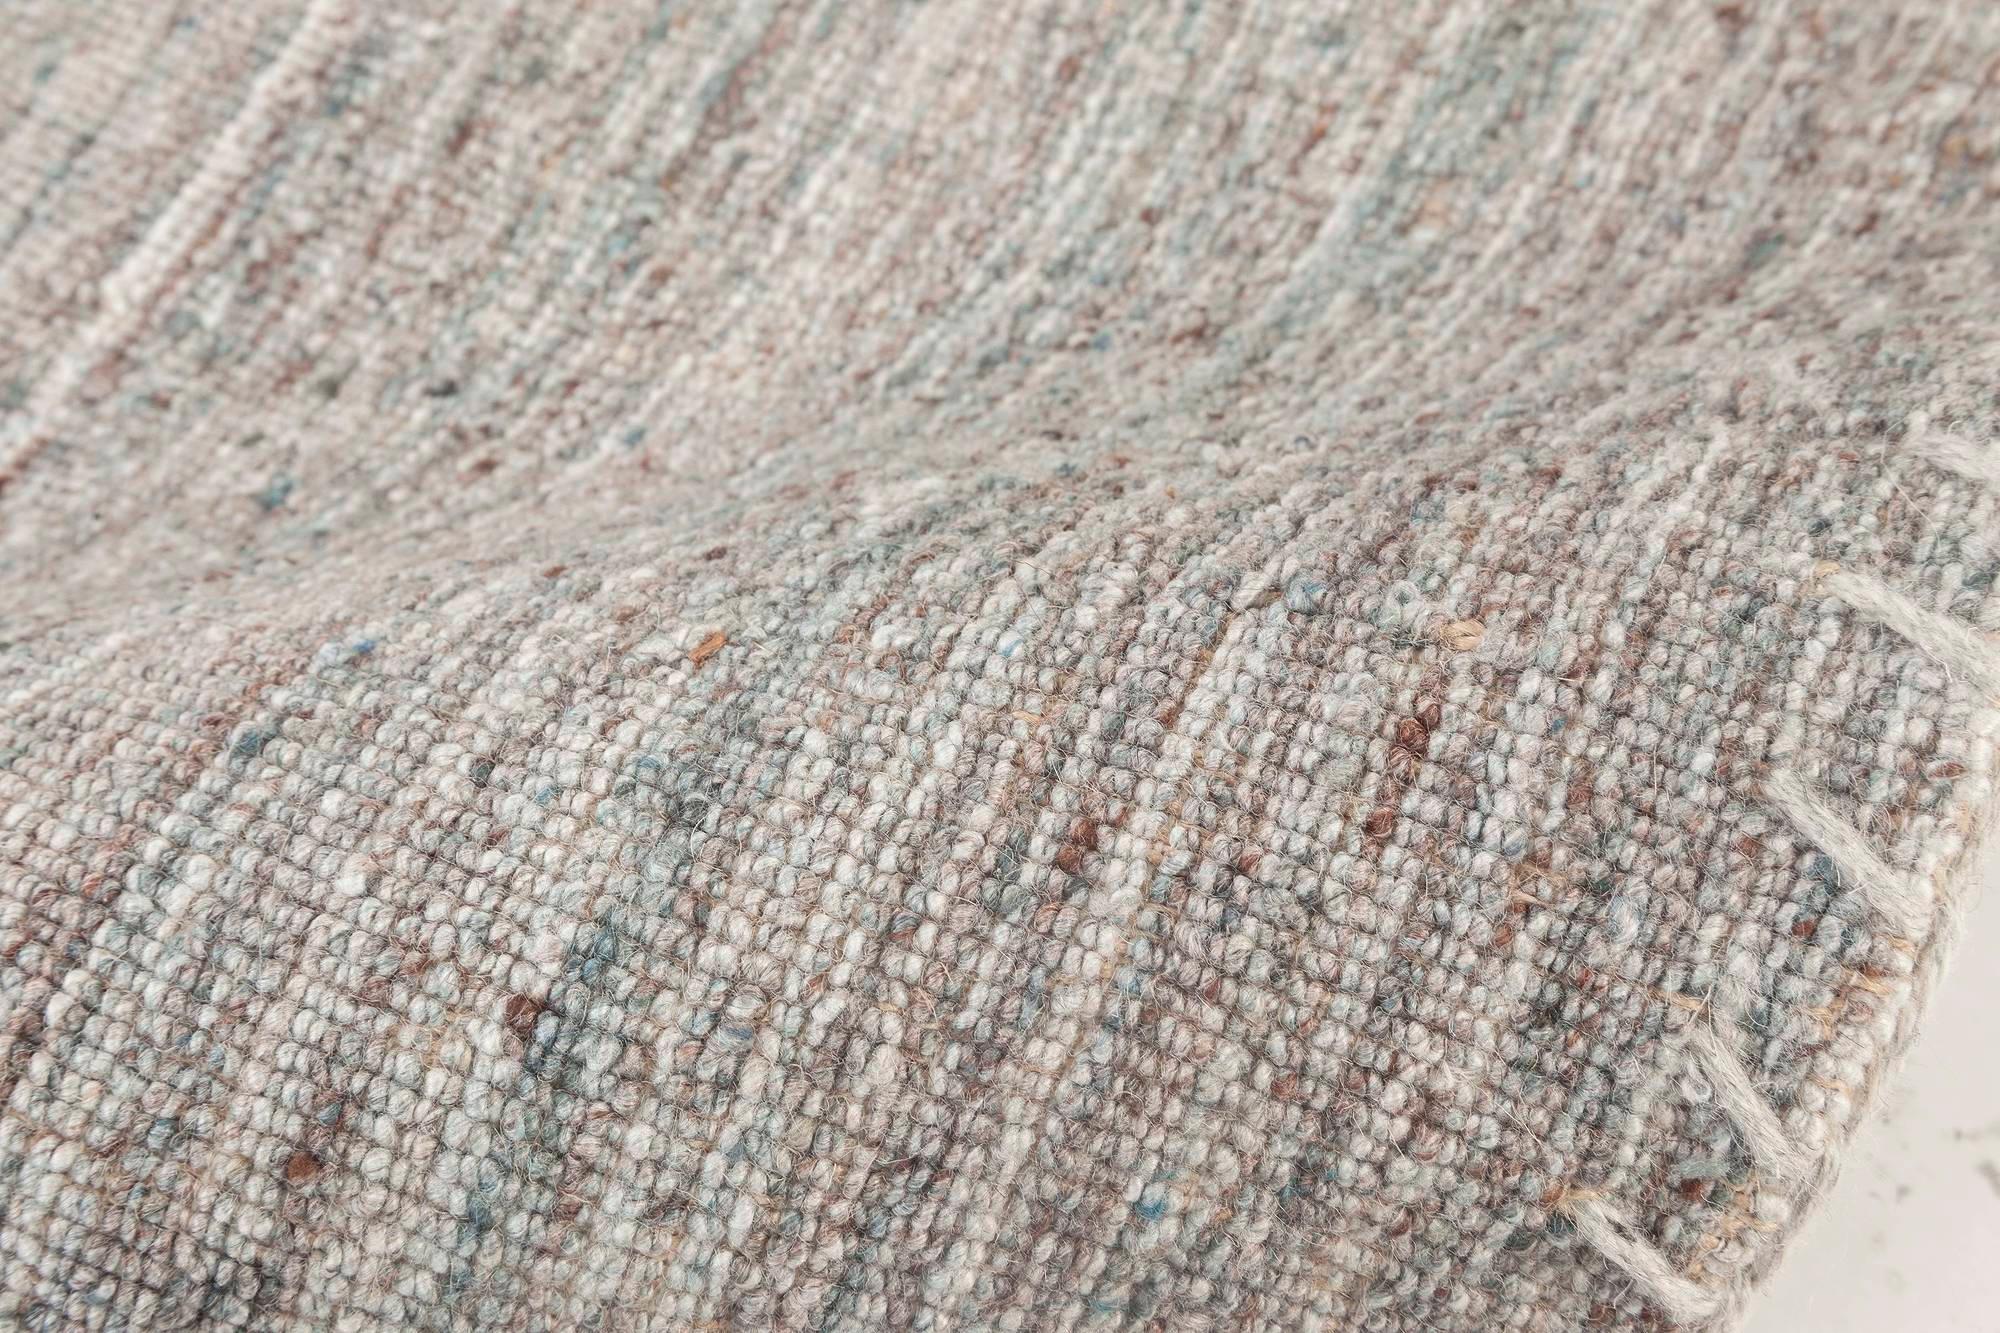 Bauer Collection Moderner grauer Teppich ohne Muster von Doris Leslie Blau.
Größe: 6'7